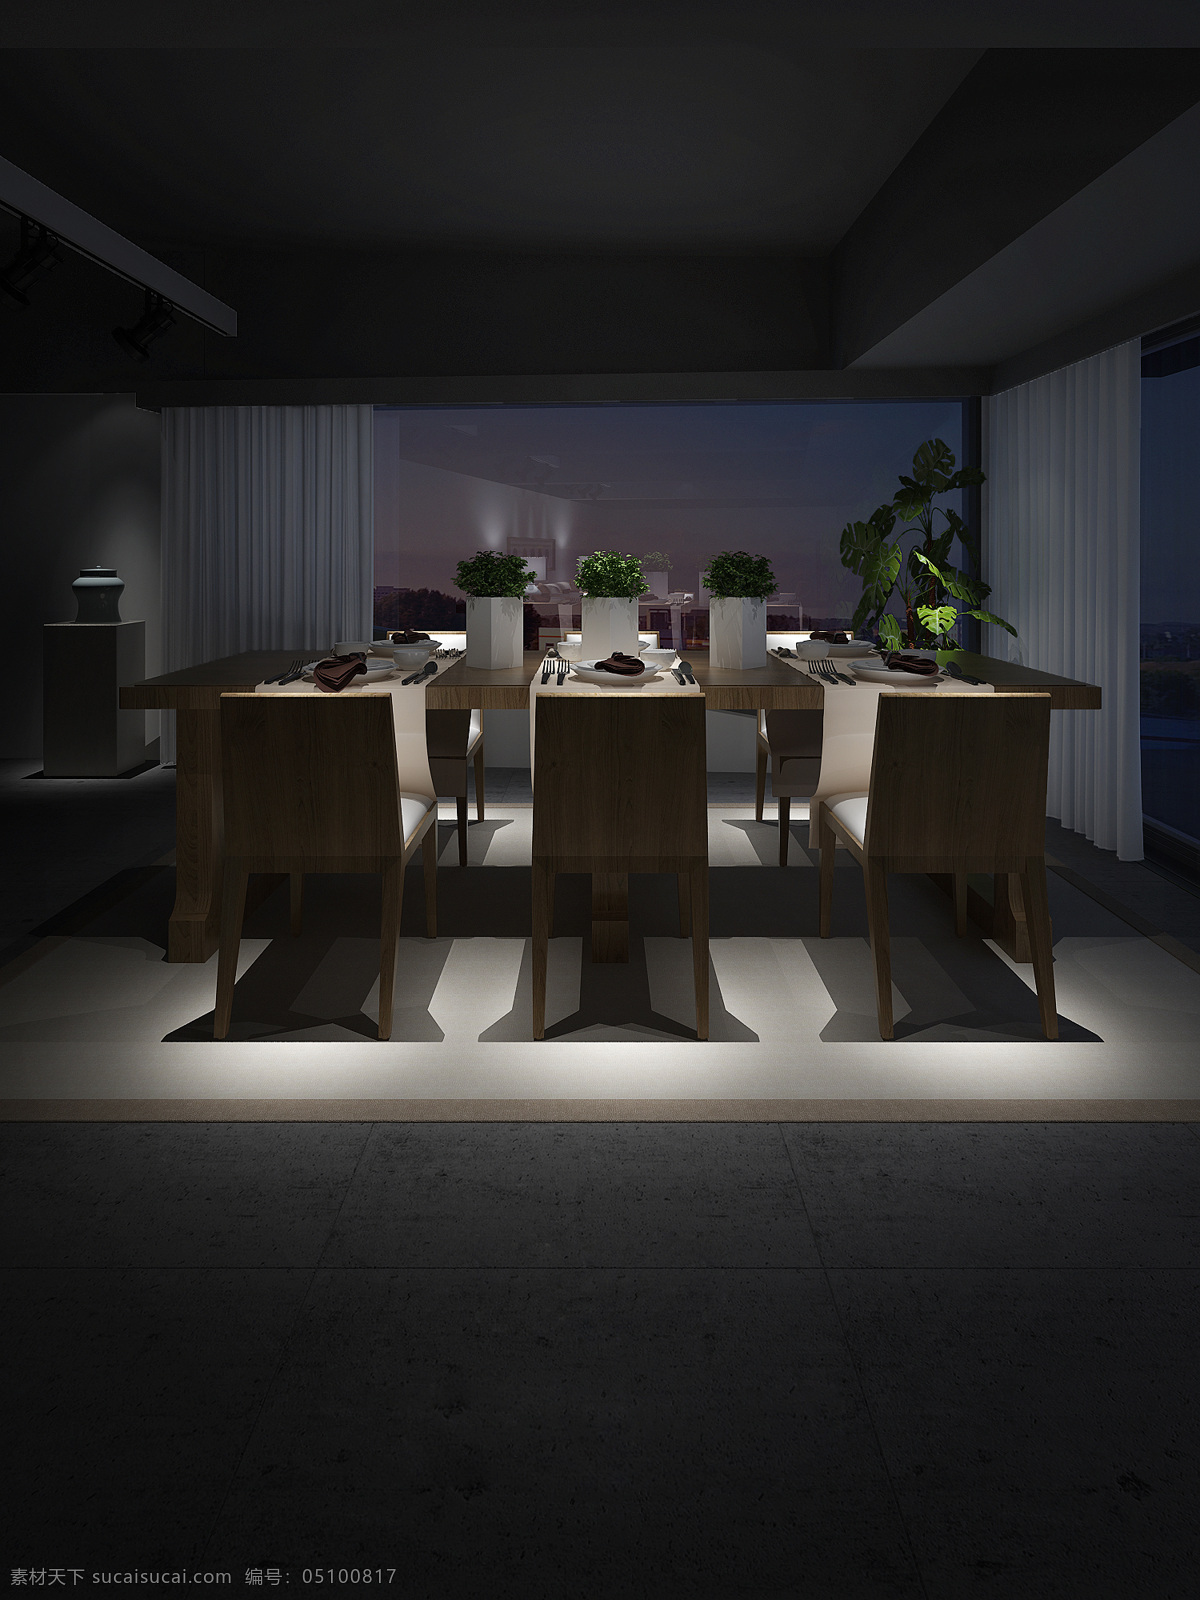 中式 餐厅 餐桌 效果图 中式餐厅 原木桌椅 灯光